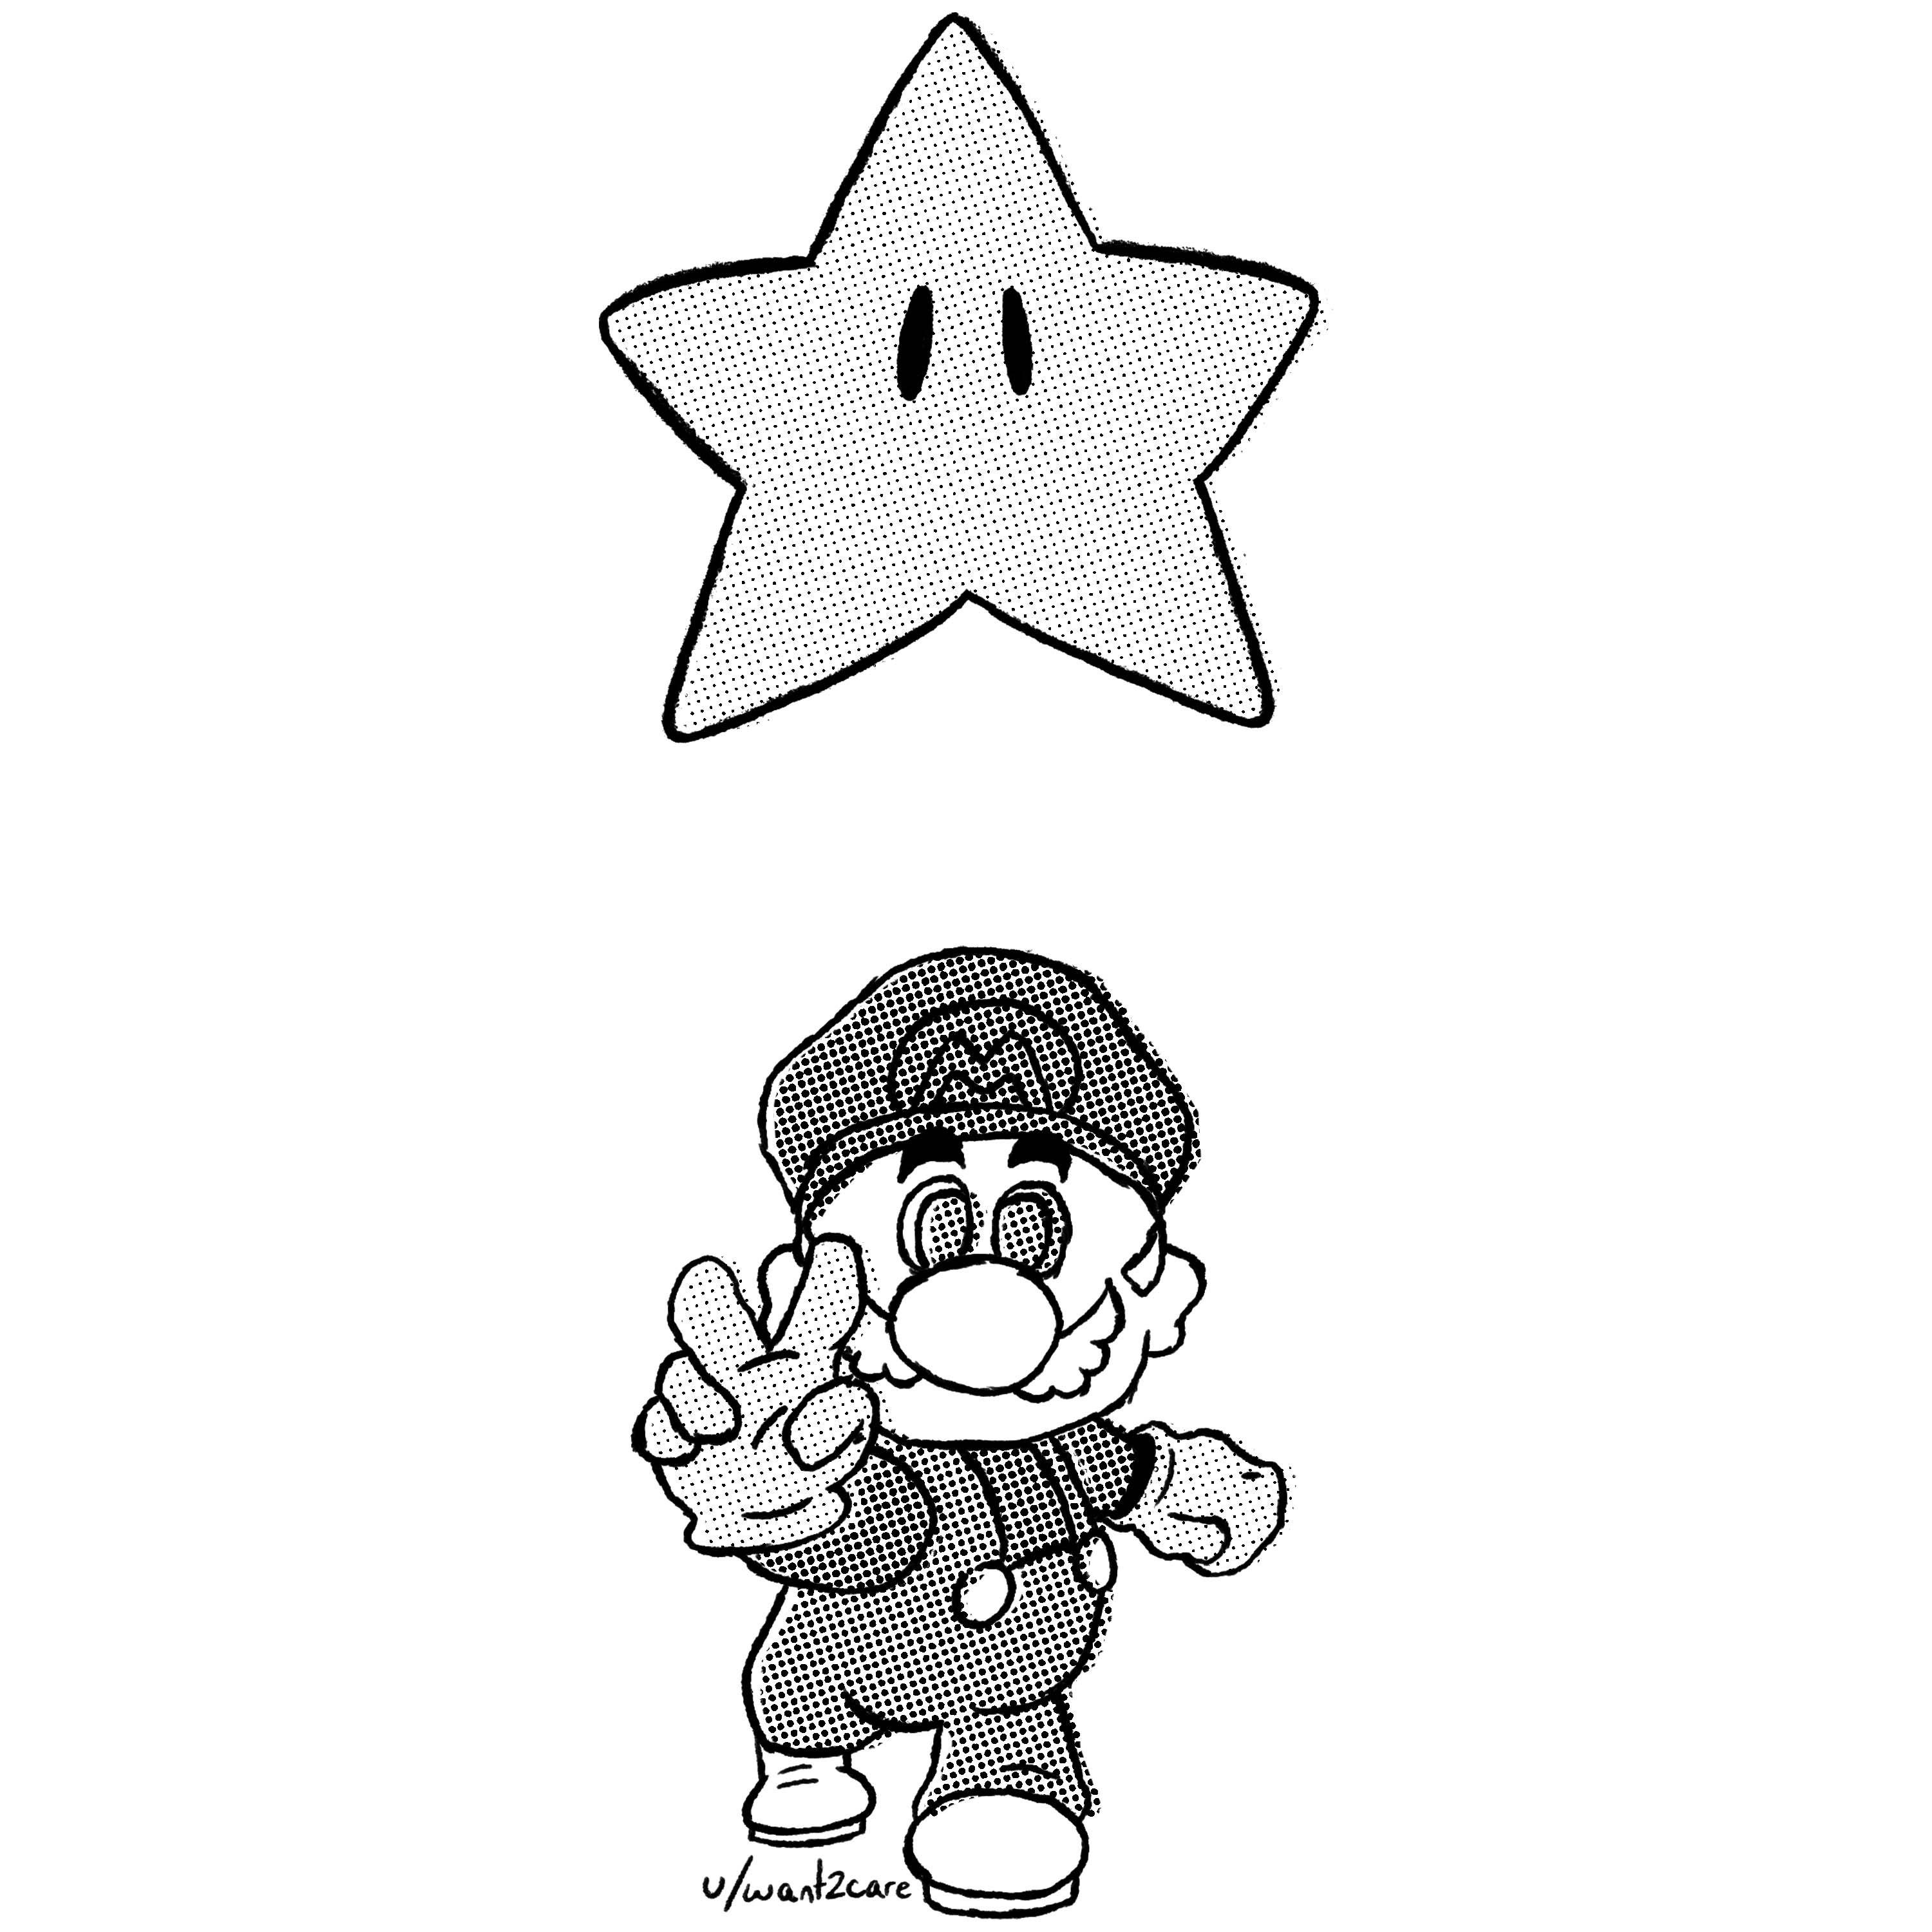 Mario 64 Digital Sketch ✍